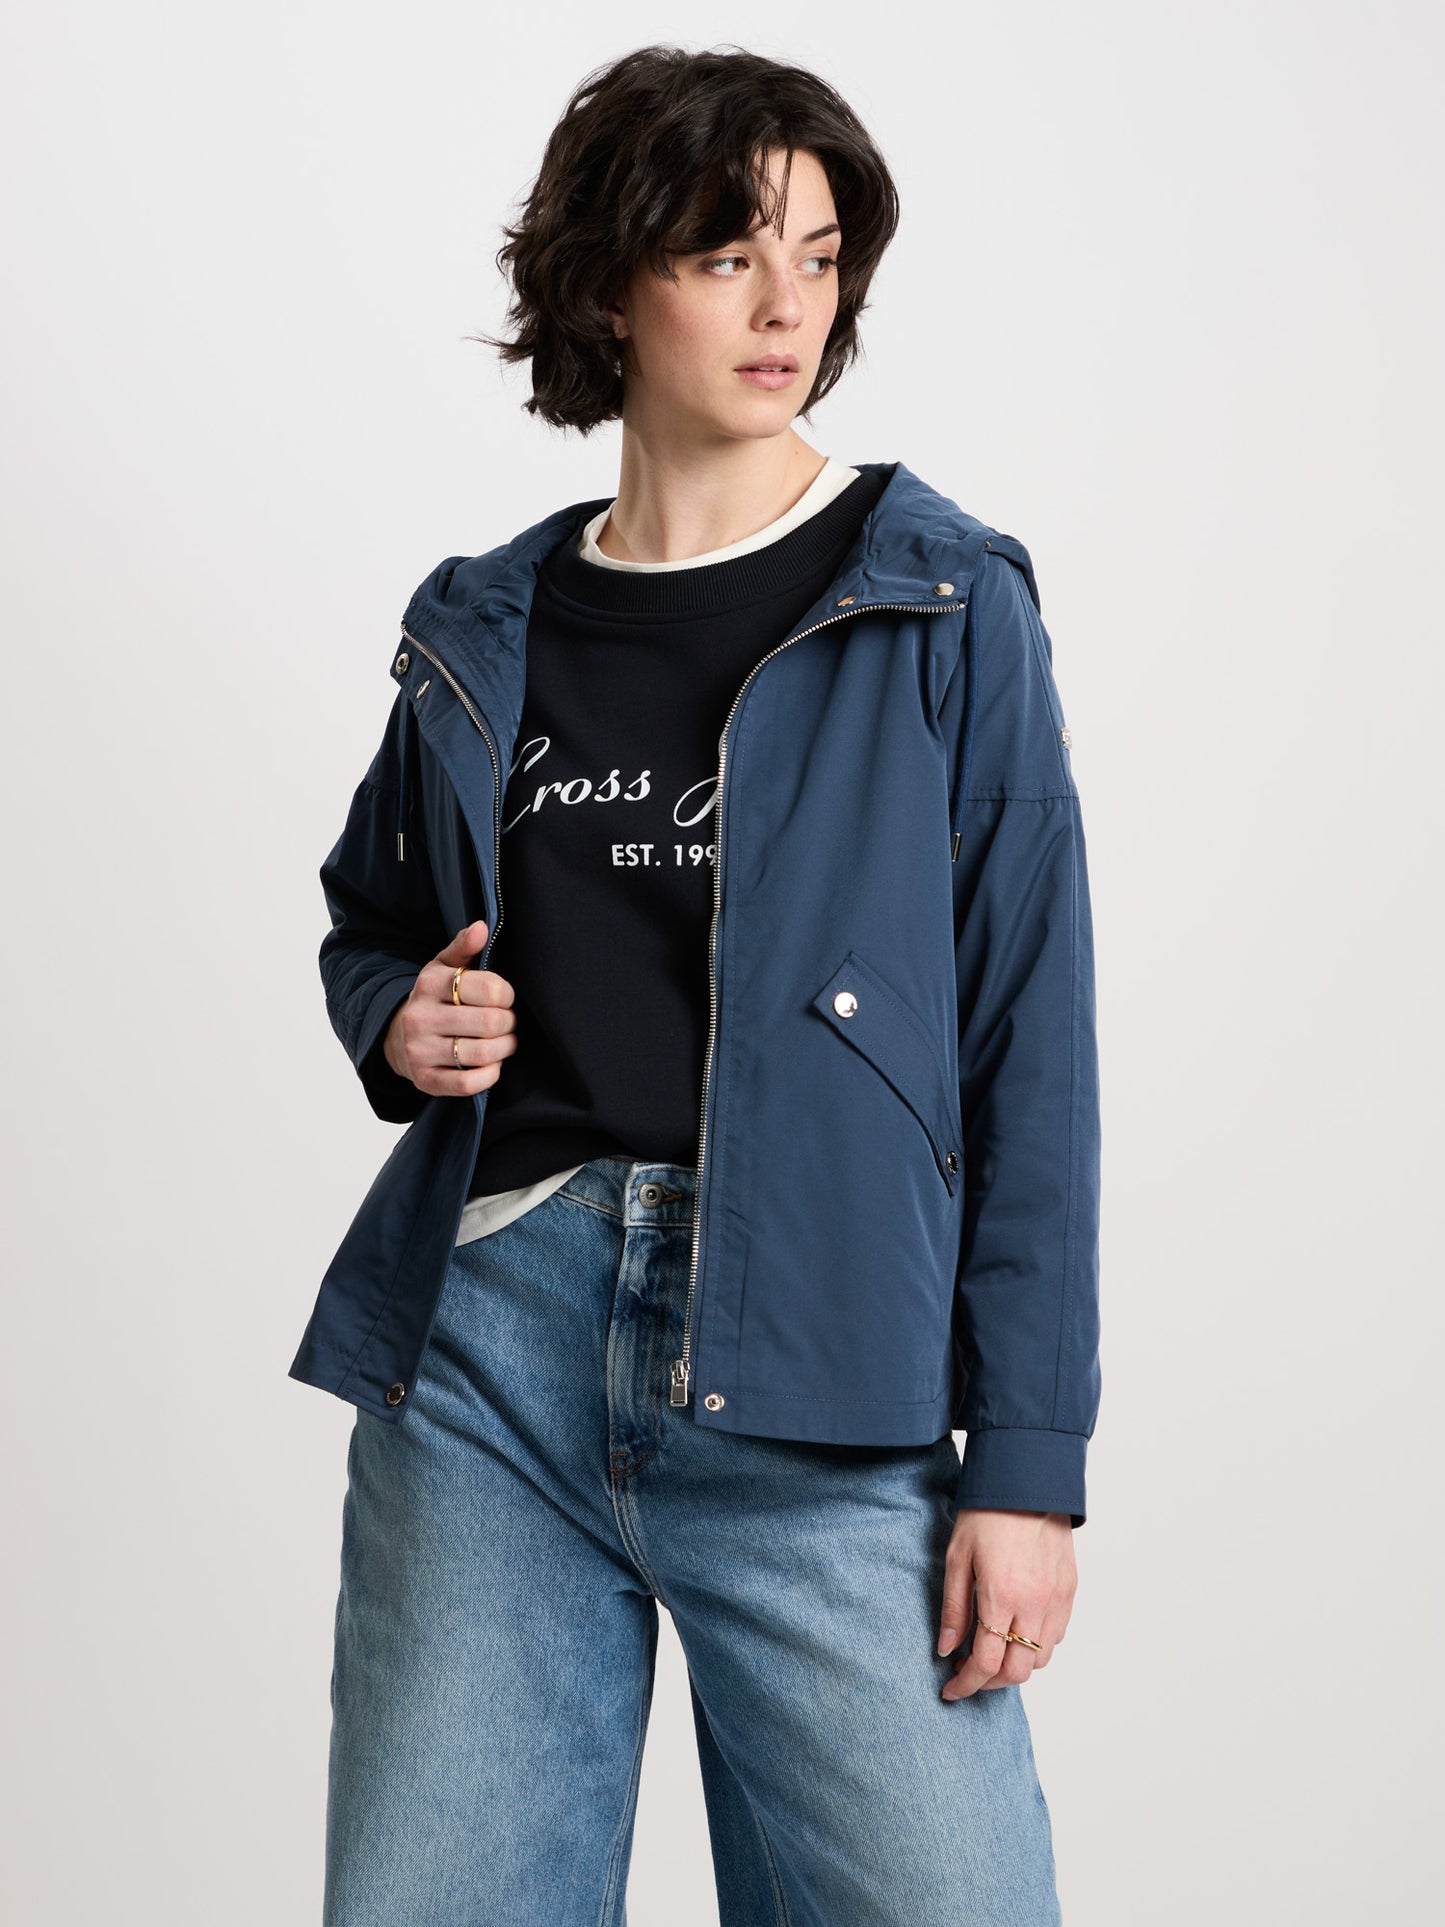 Ladies regular jacket with hood, zip and snap fasteners navy blue